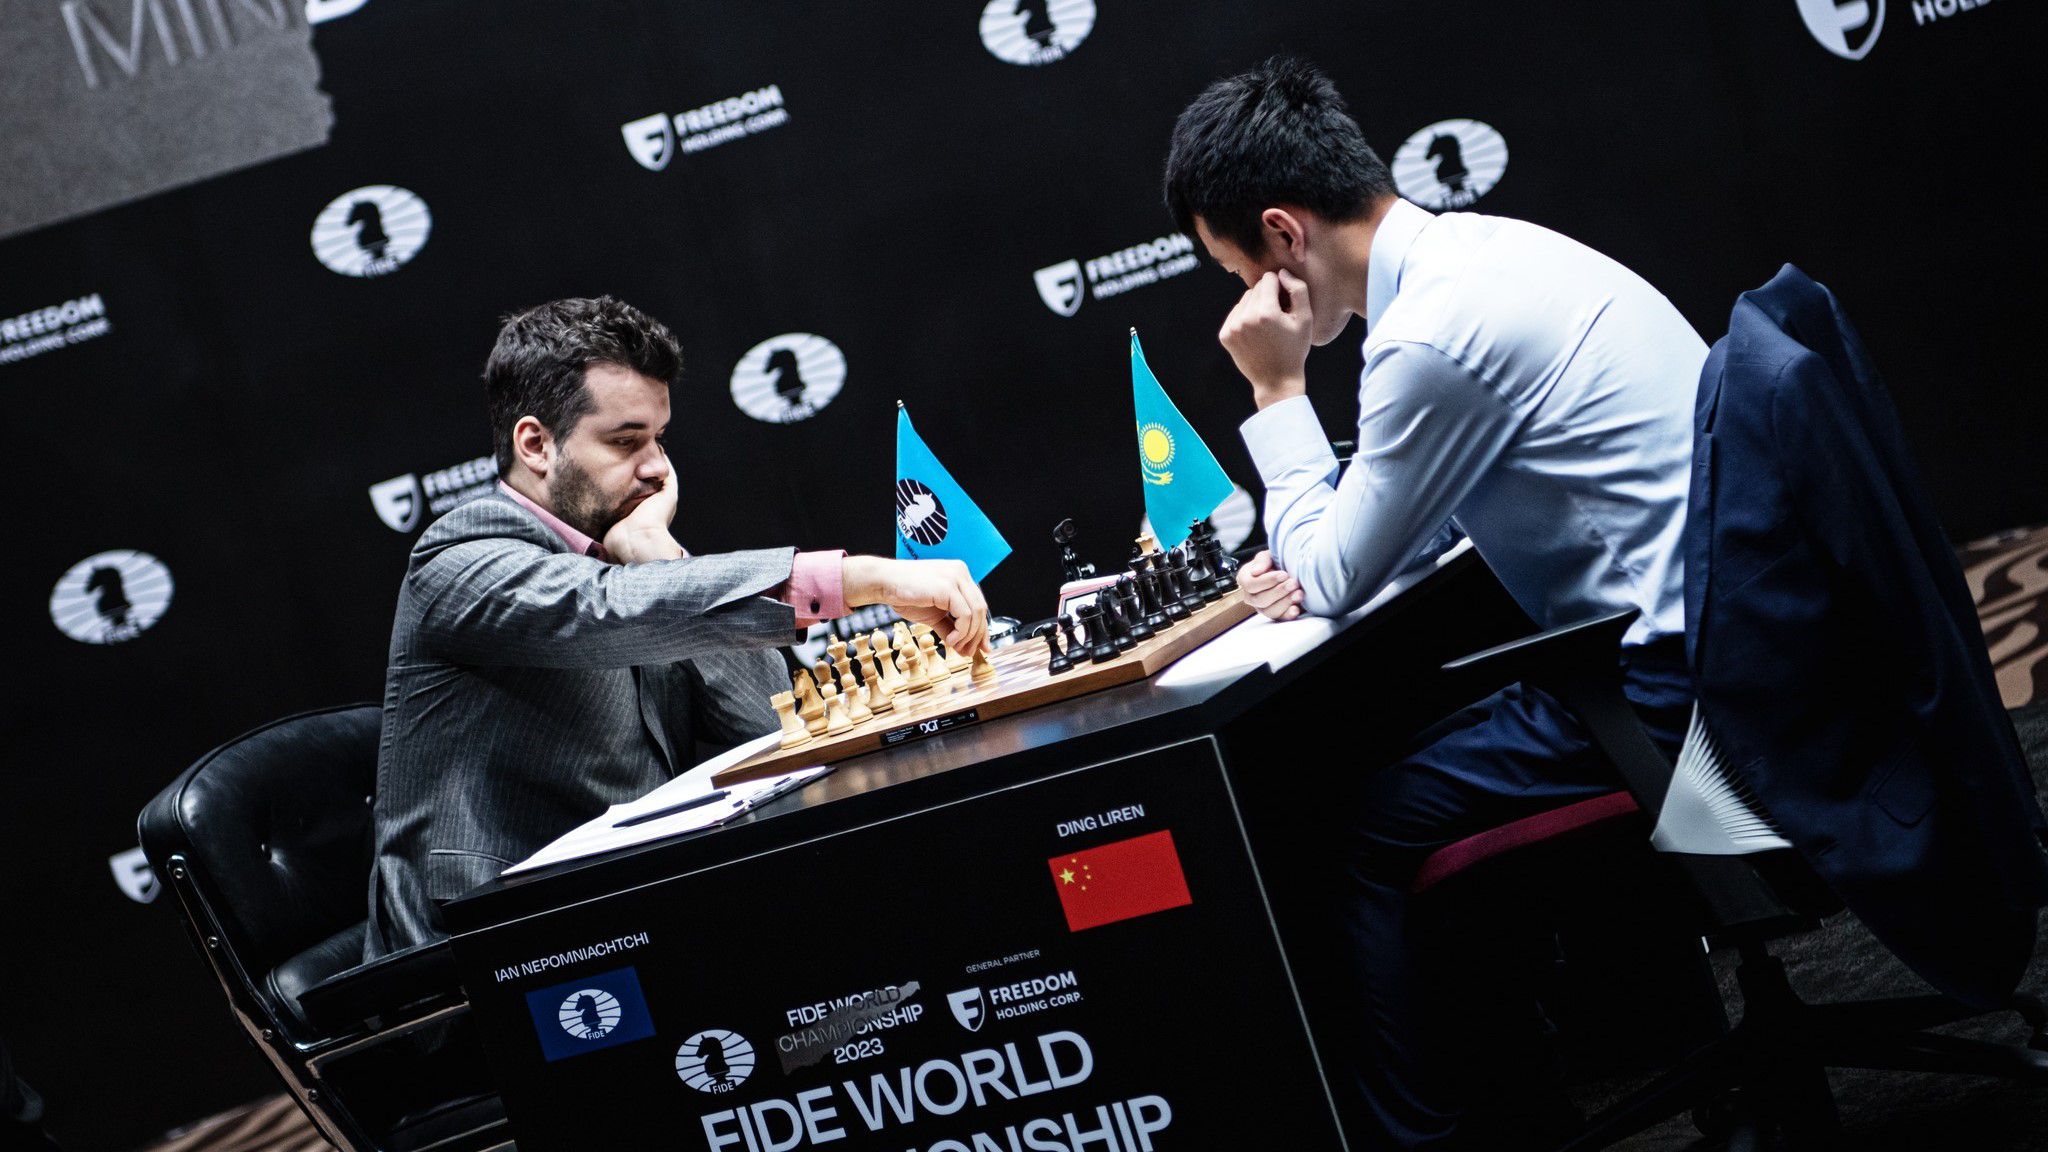 Az orosznak a győzelem már-már a világbajnoki címet jelentette volna. (Fotó: FIDE/Stev Bonhage)